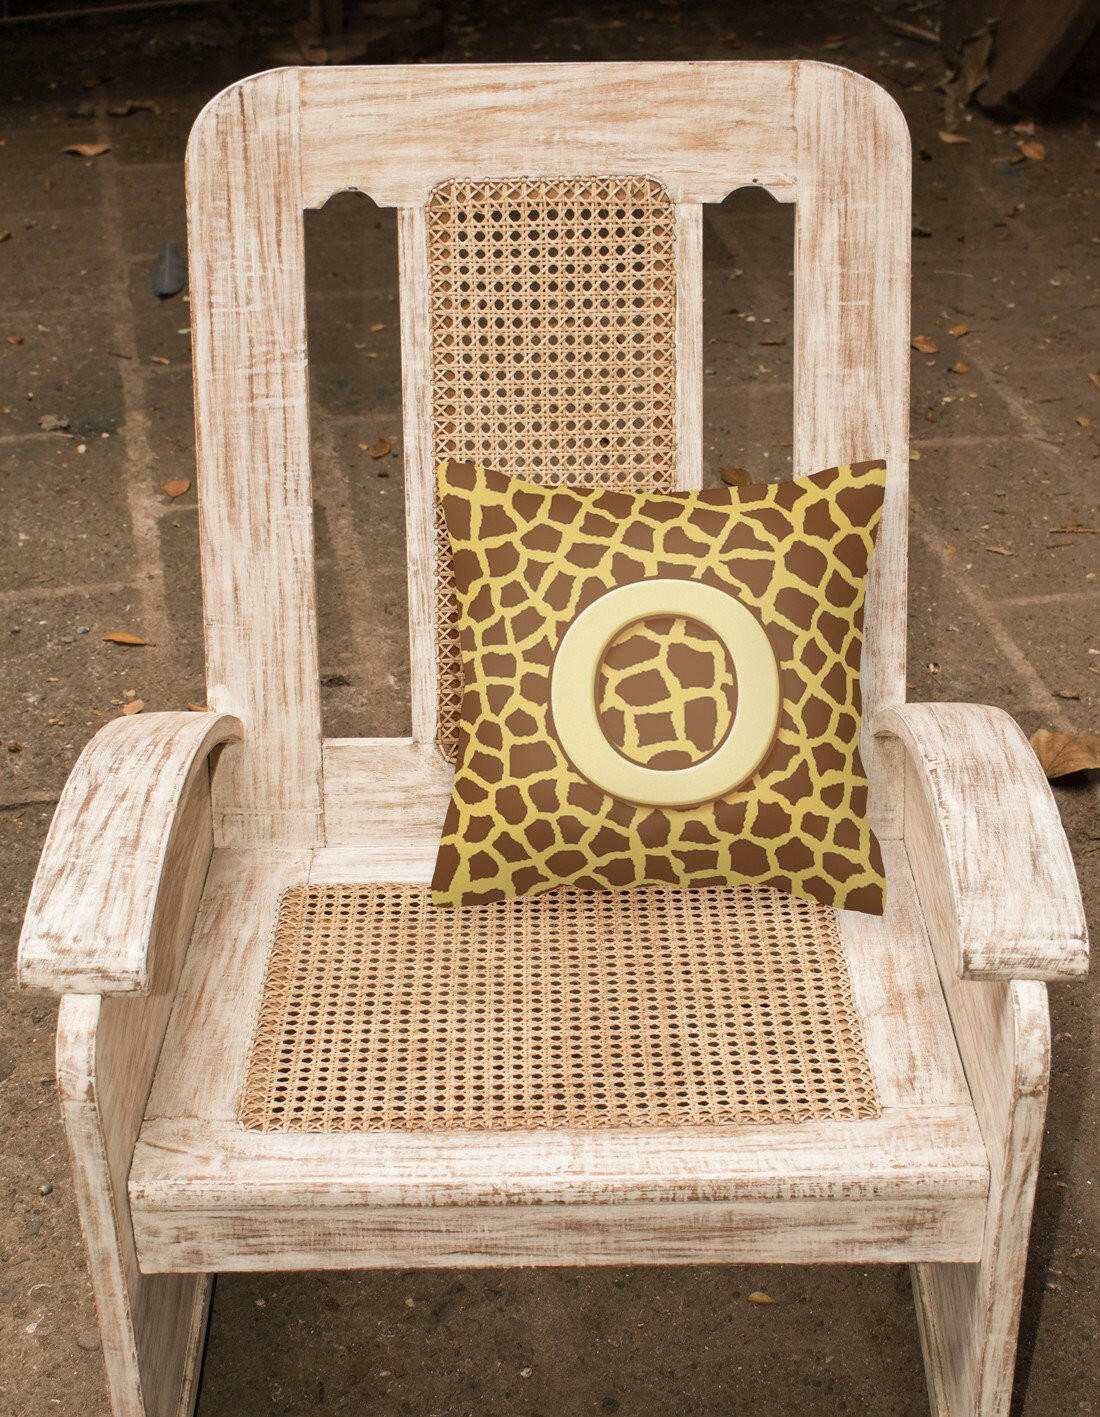 Monogram Initial O Giraffe Decorative   Canvas Fabric Pillow CJ1025 - the-store.com